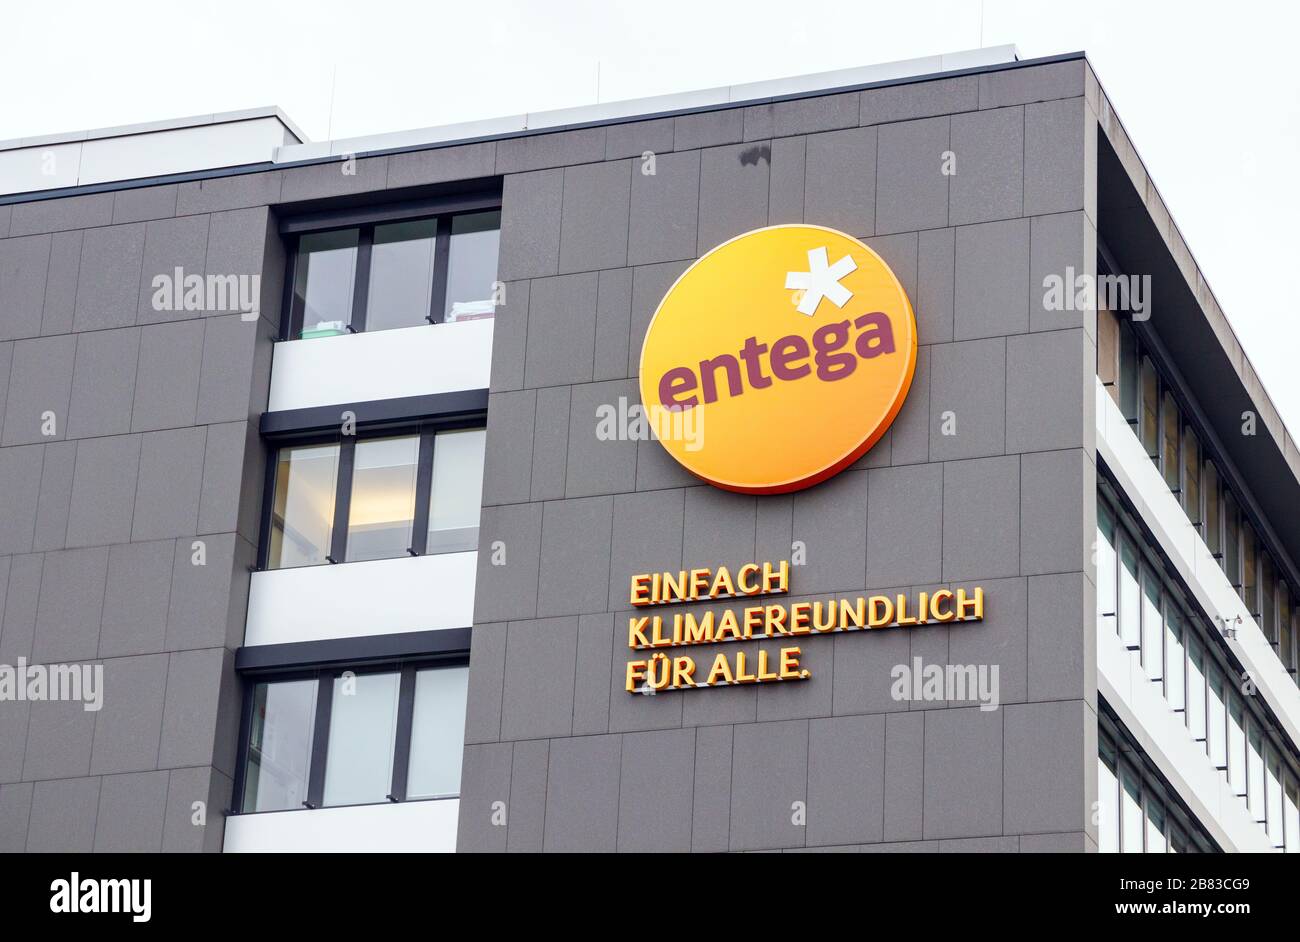 Wand eines Bürogebäudes mit dem Entega-Logo und einem Text mit der Aufschrift "Klimafreundlich einfach für alle". Darmstadt, Deutschland. Stockfoto